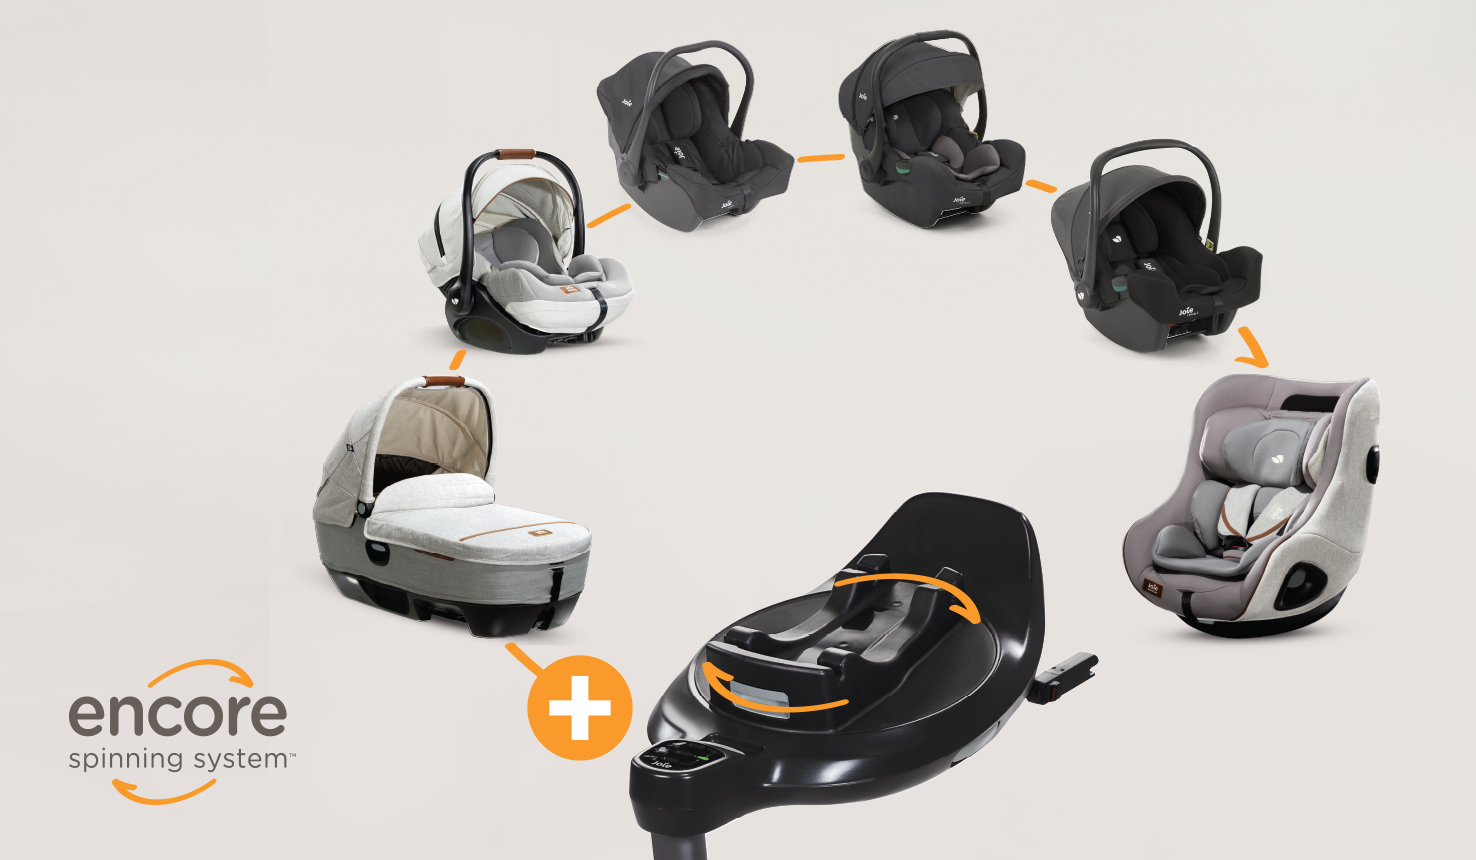  Die i base encore ist als Teil des Encore Spinning System mit einer Vielzahl von Joie-Autositzen kompatibel, um mit Ihrem Kind ab Geburt bis zu vier Jahren mitzuwachsen.